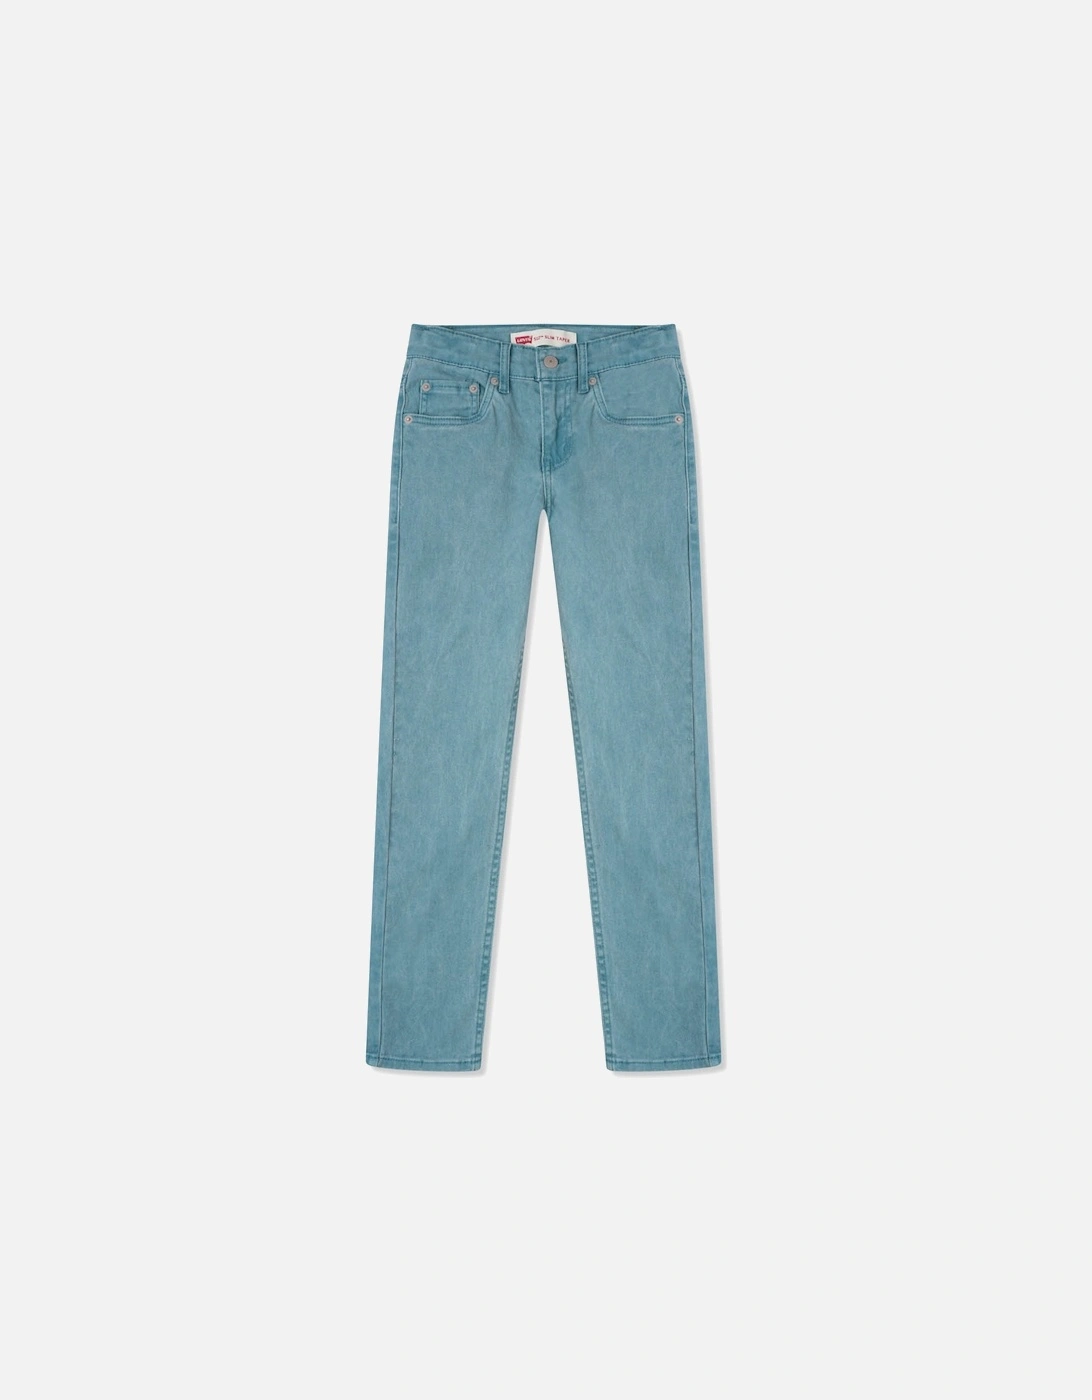 LEVIS Juniors 512 Slim Taper Jeans (Blue), 3 of 2